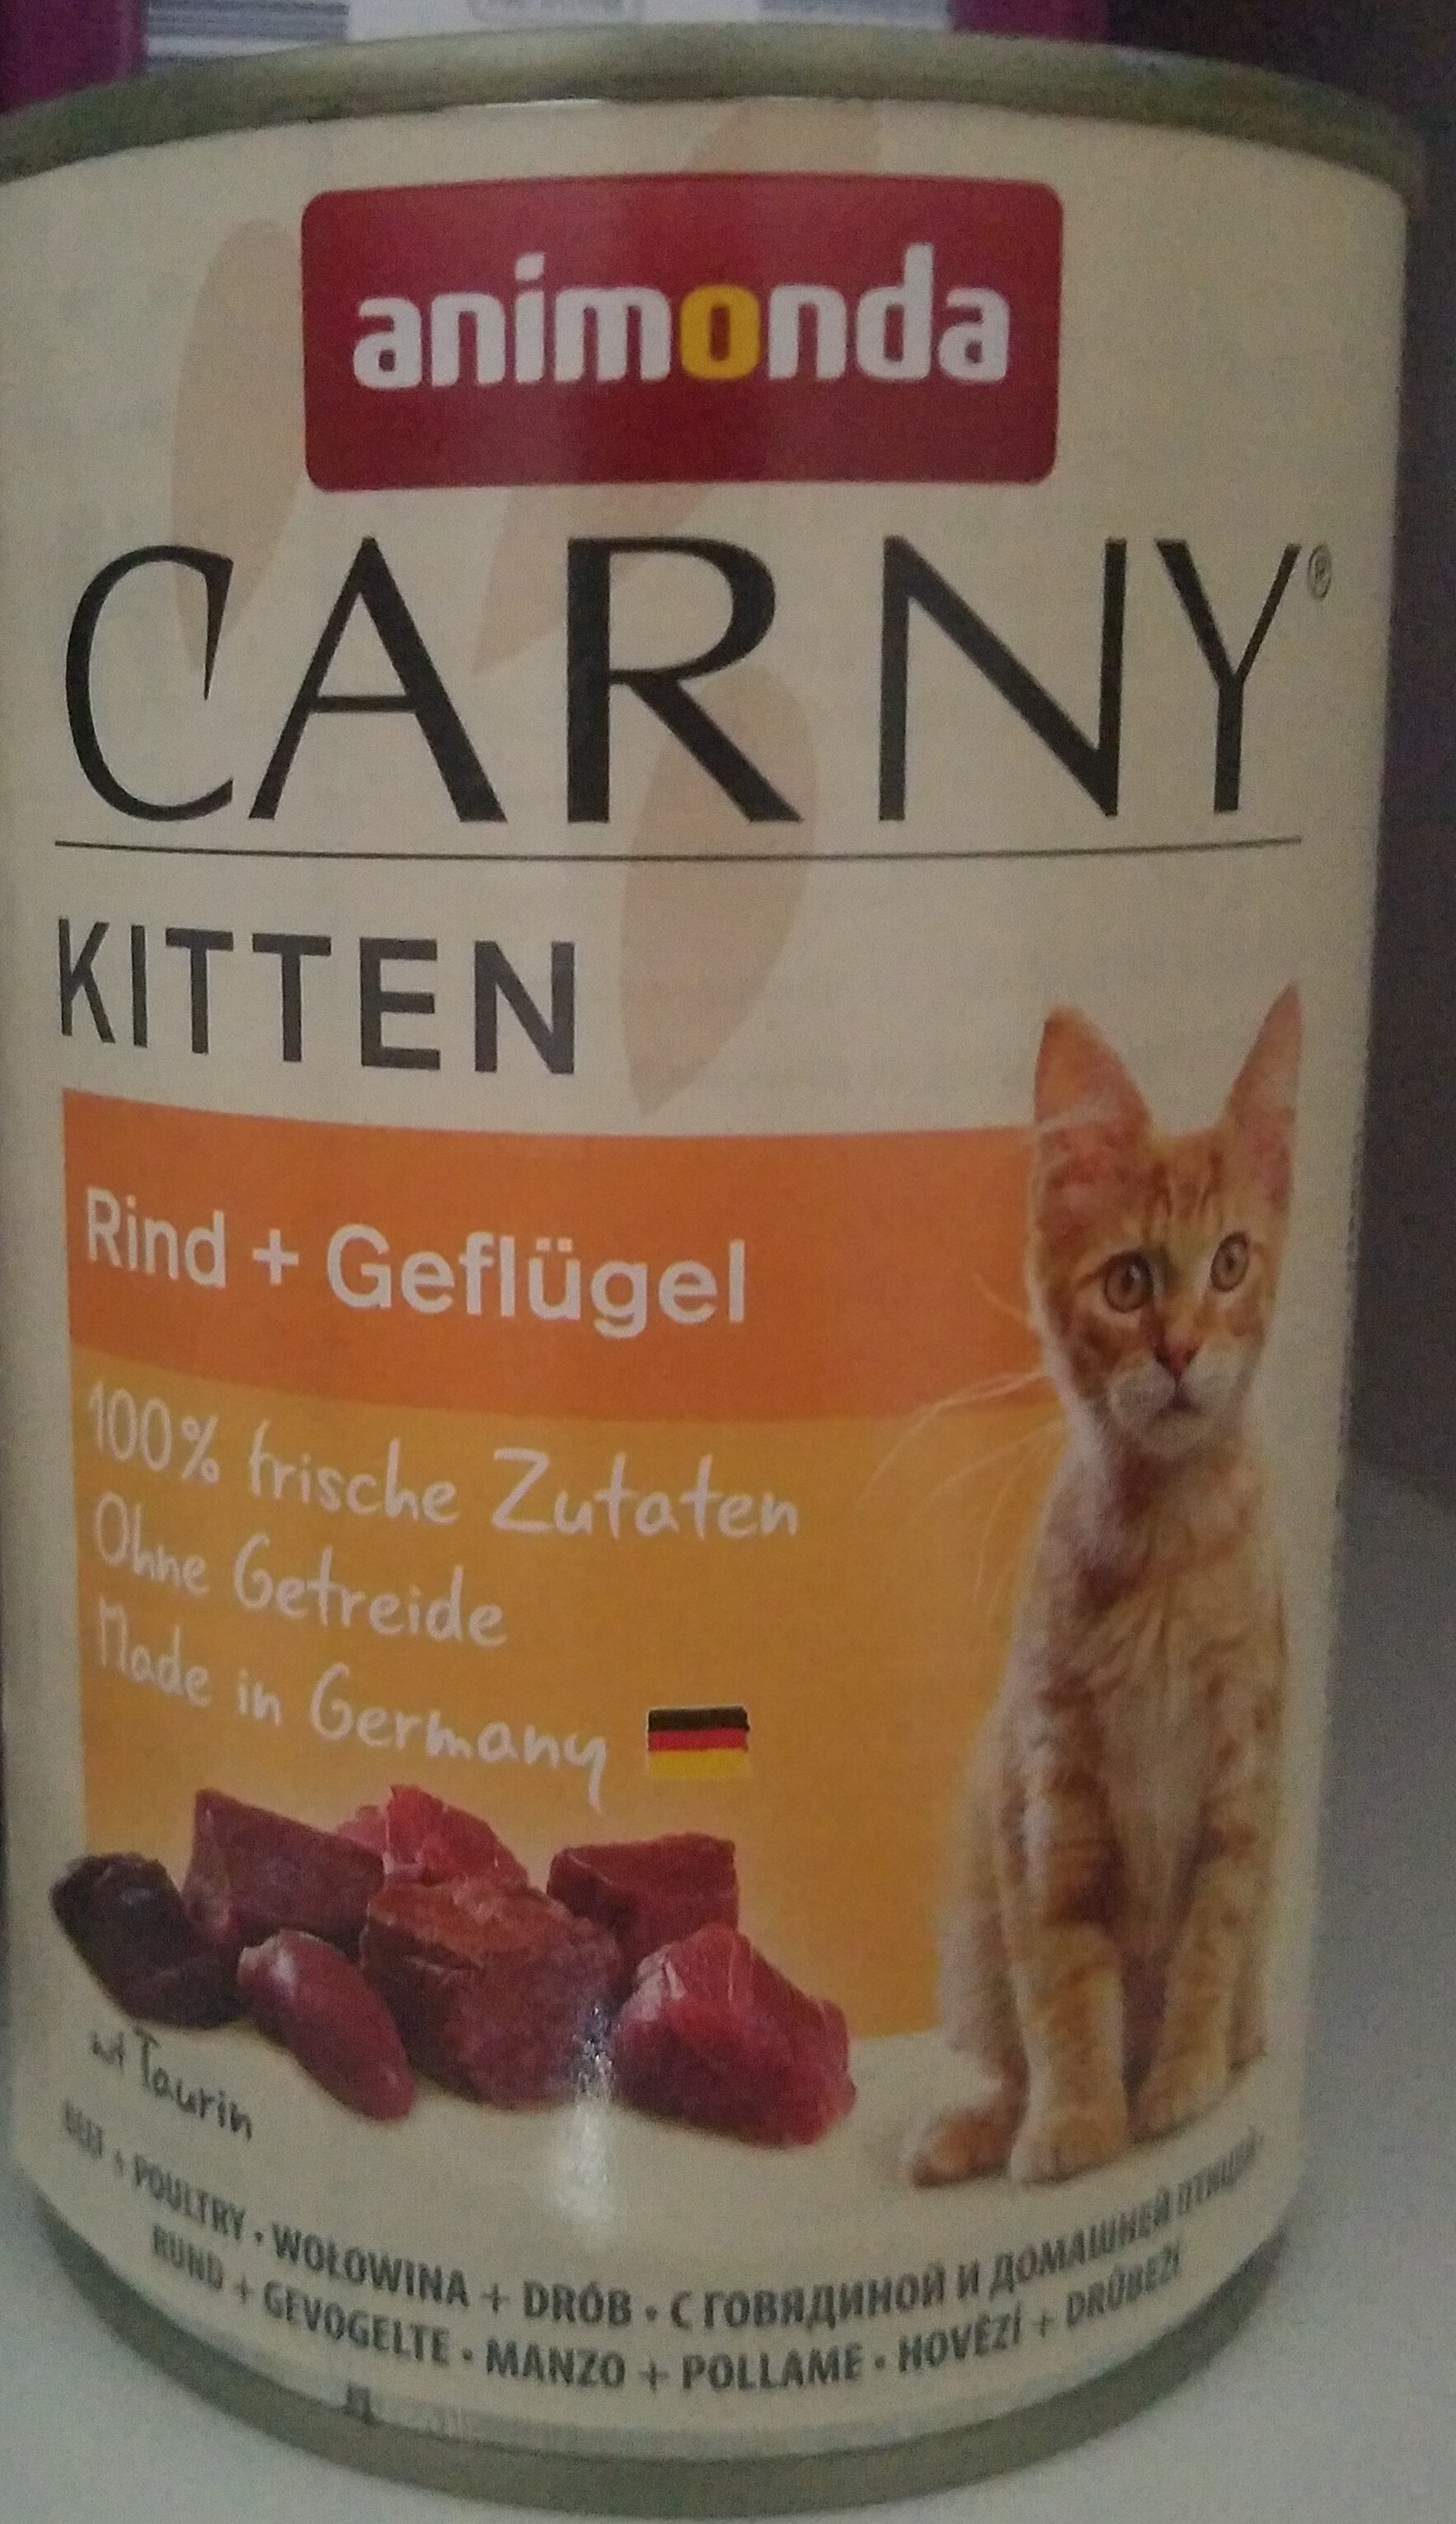 Carny - Kitten - Rind + Geflügel - Product - de